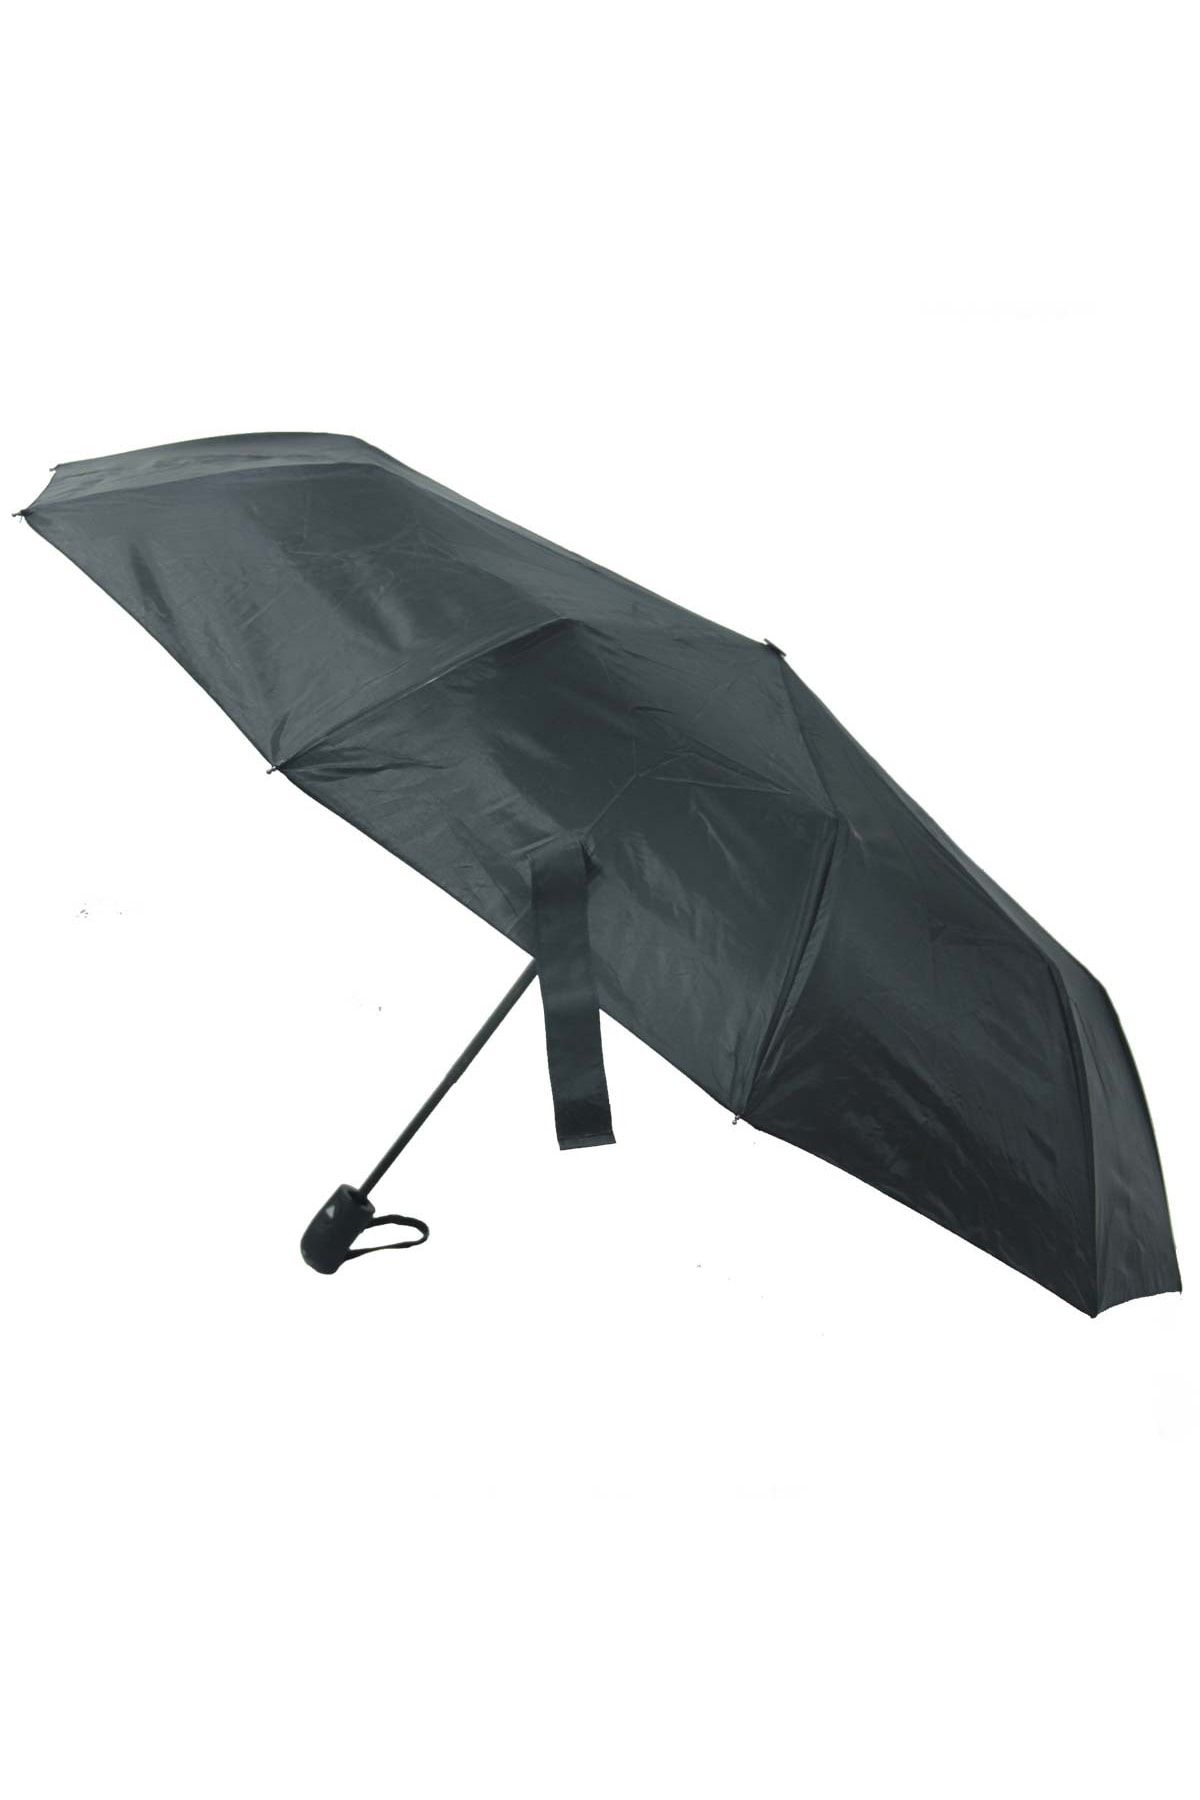 Genel Markalar Marka: Rubenıs Otomatik Erkek Şemsiye Rb-053m Kategori: Diğer Oyun Takımları